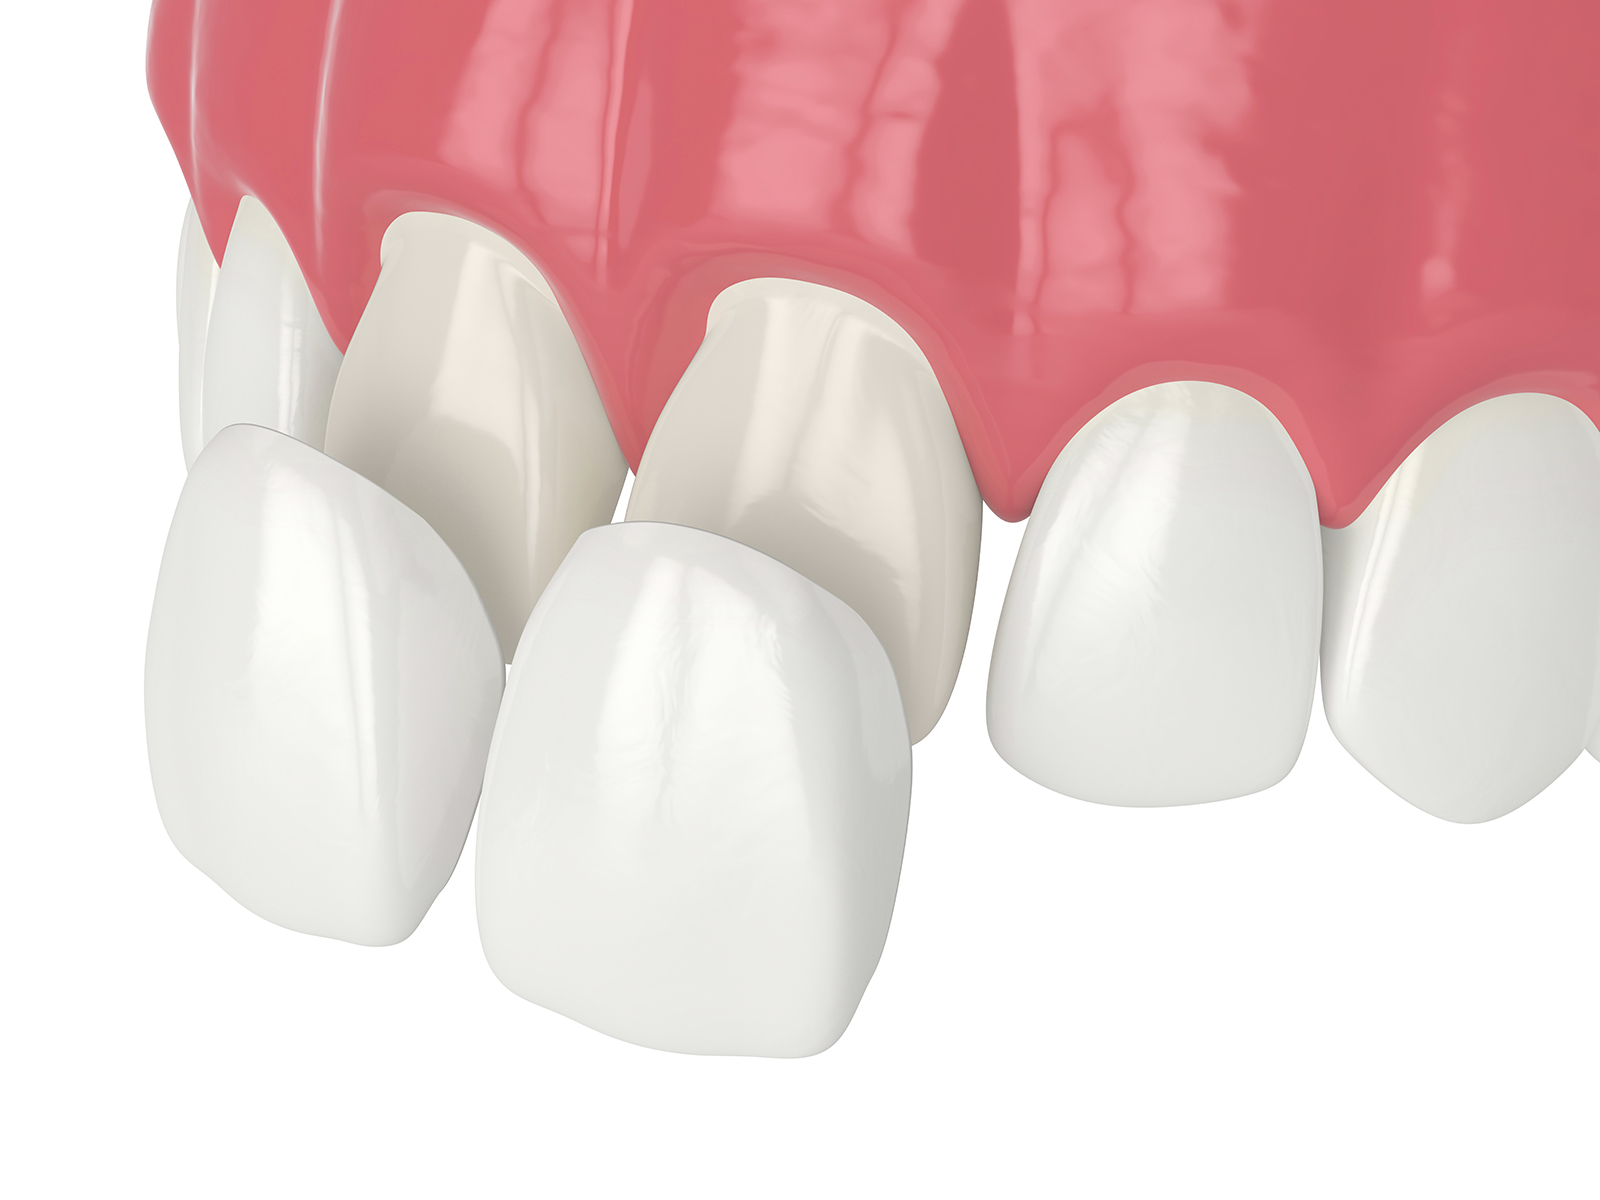 5 Benefits Of Dental Veneers